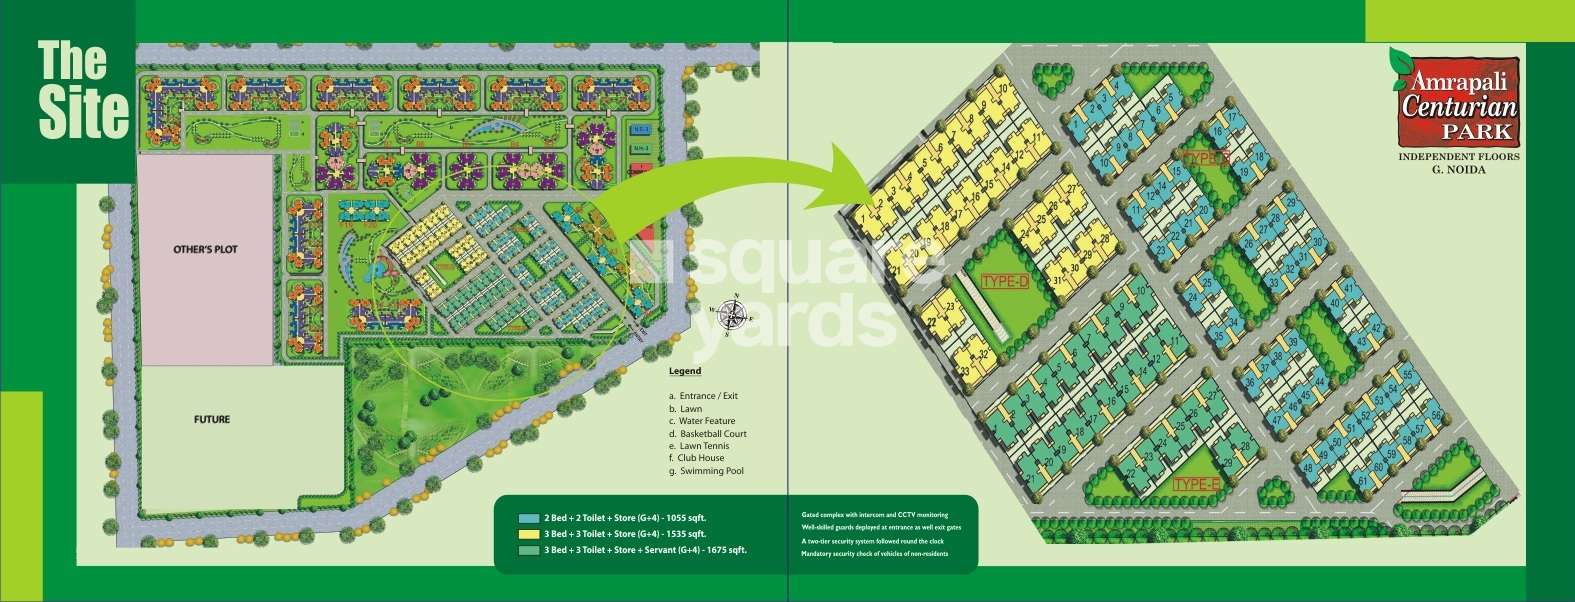 amrapali centurian park phase ii project master plan image1